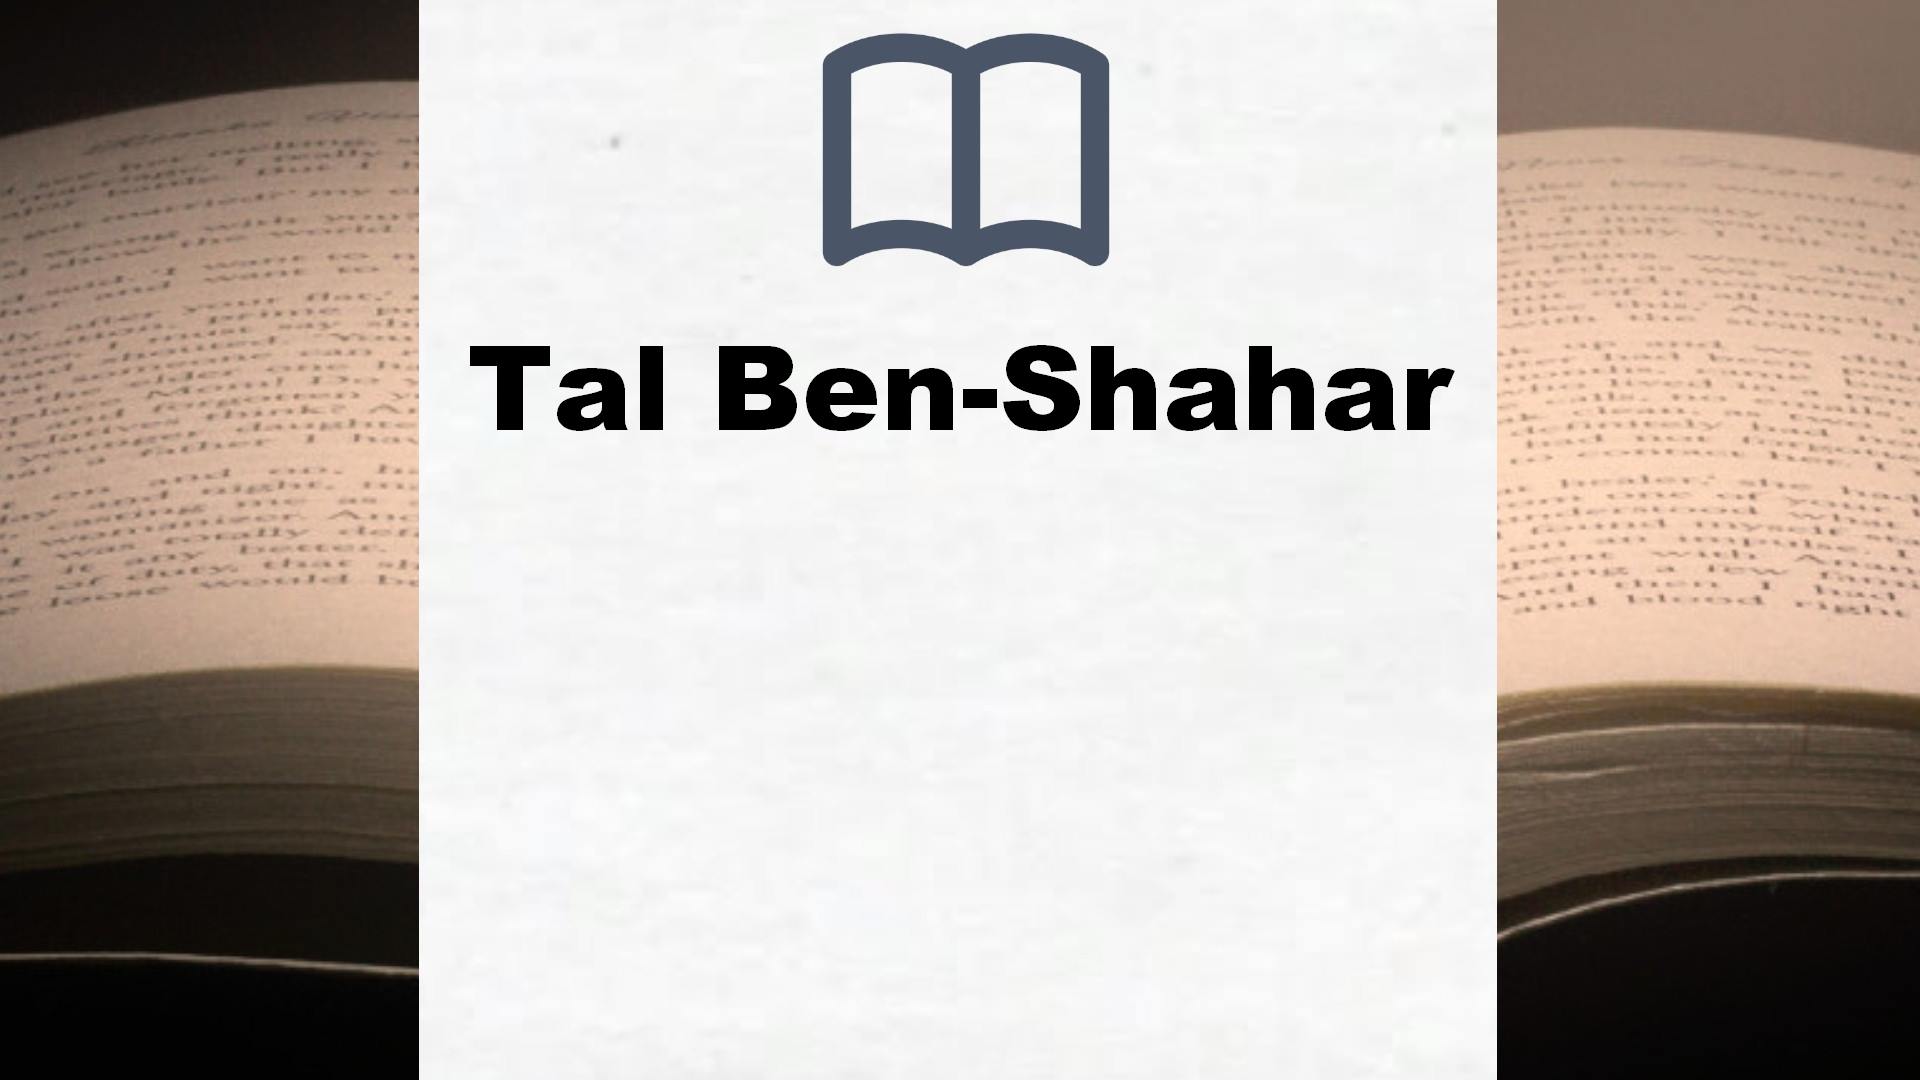 Libros Tal Ben-Shahar